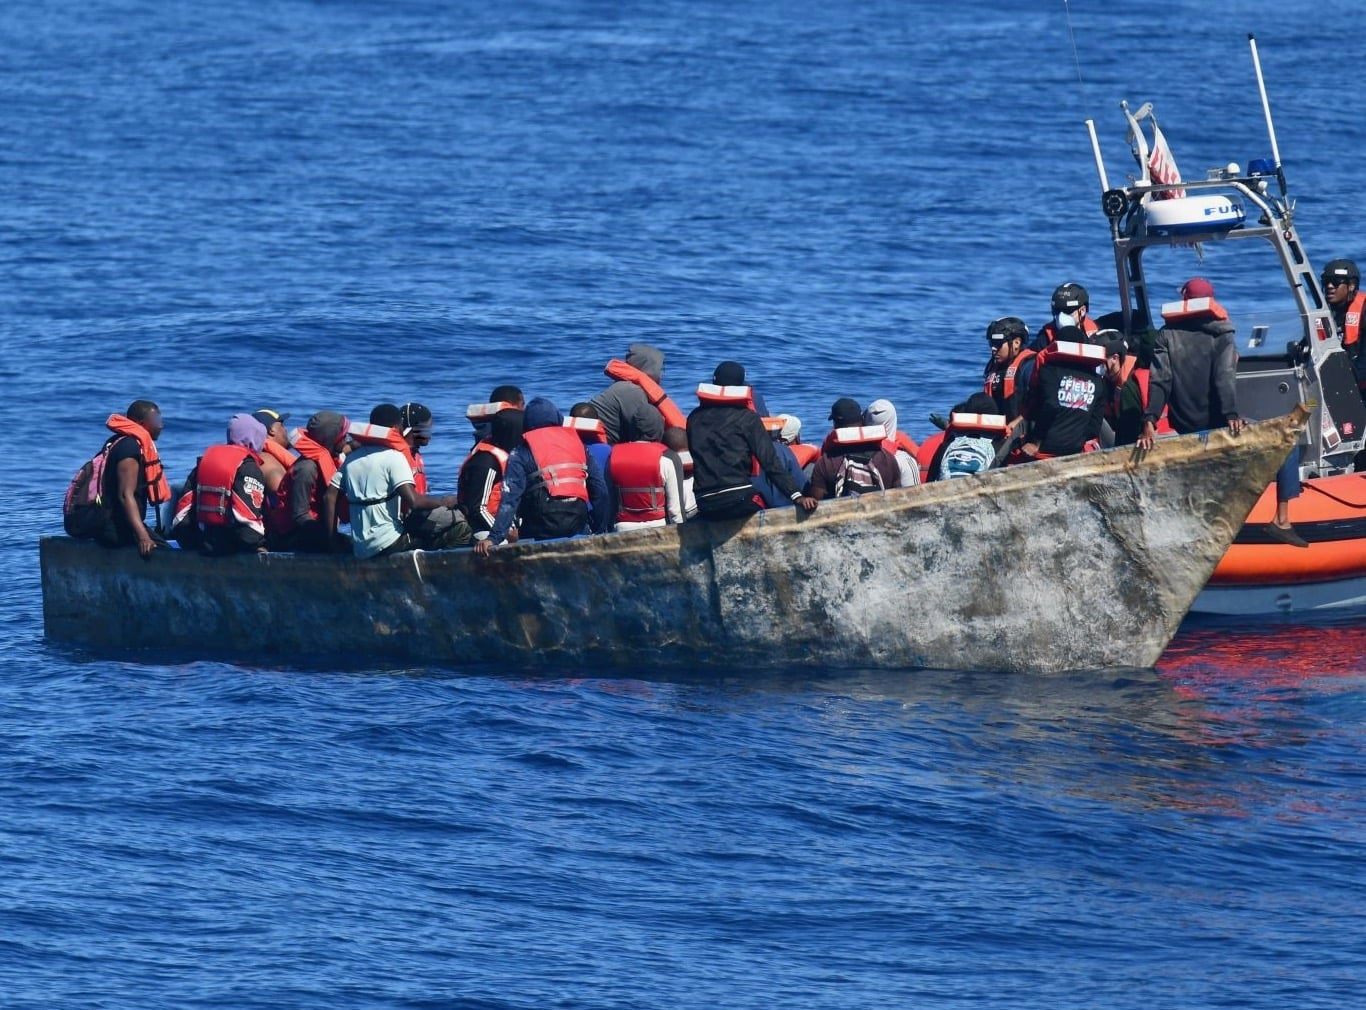 Migrantes detenidos por la Guardia Costera de EE.UU. en el Canal de la Mona. Están en un bote de madera junto a otra embarcación que pertenece al cuerpo militar.